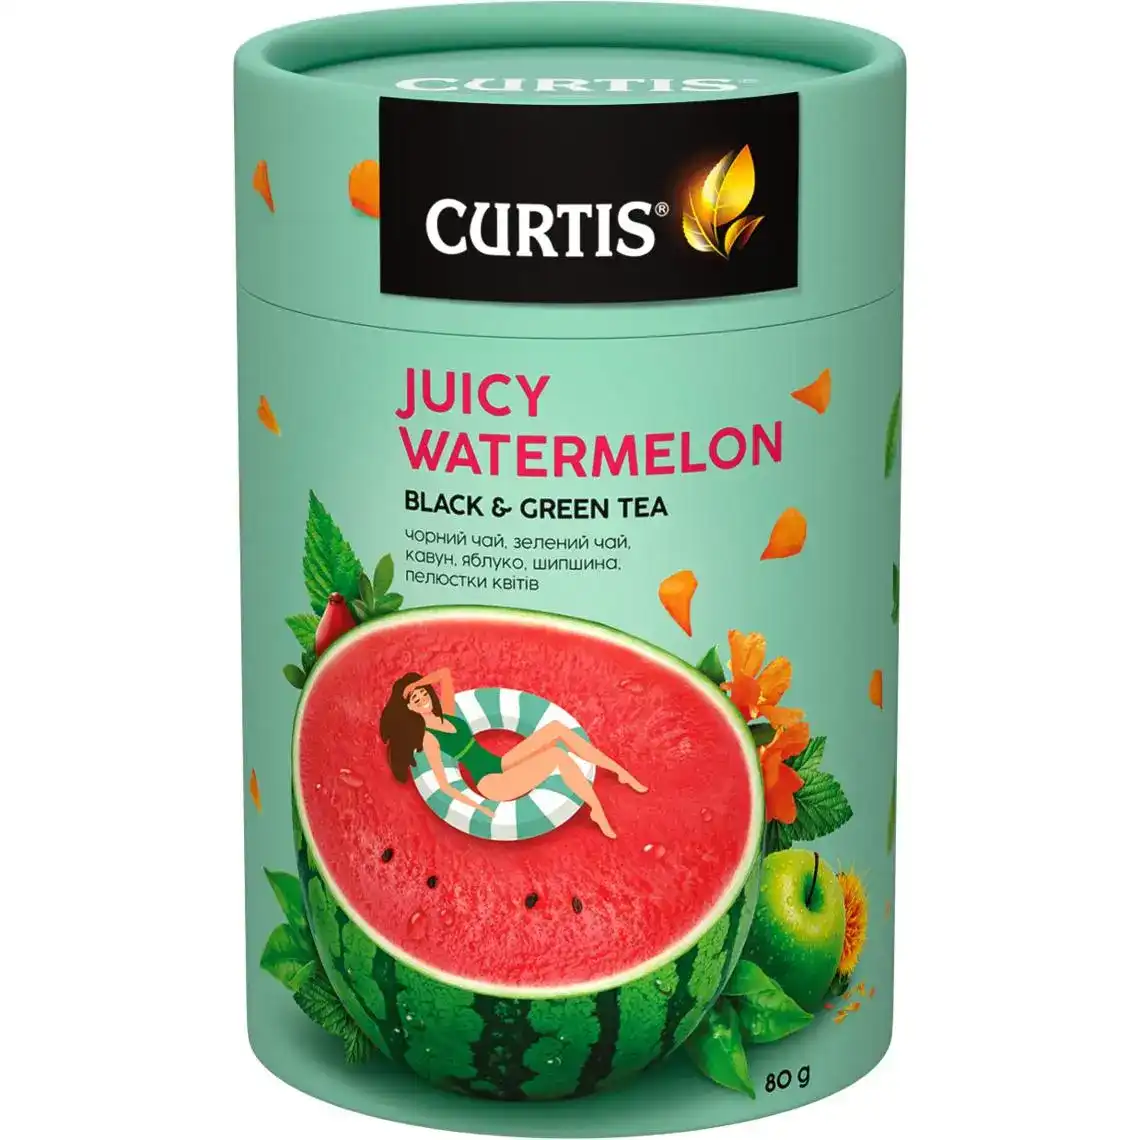 Чай Curtis Juicy Watermelon чорний та зелений мікс 80 г